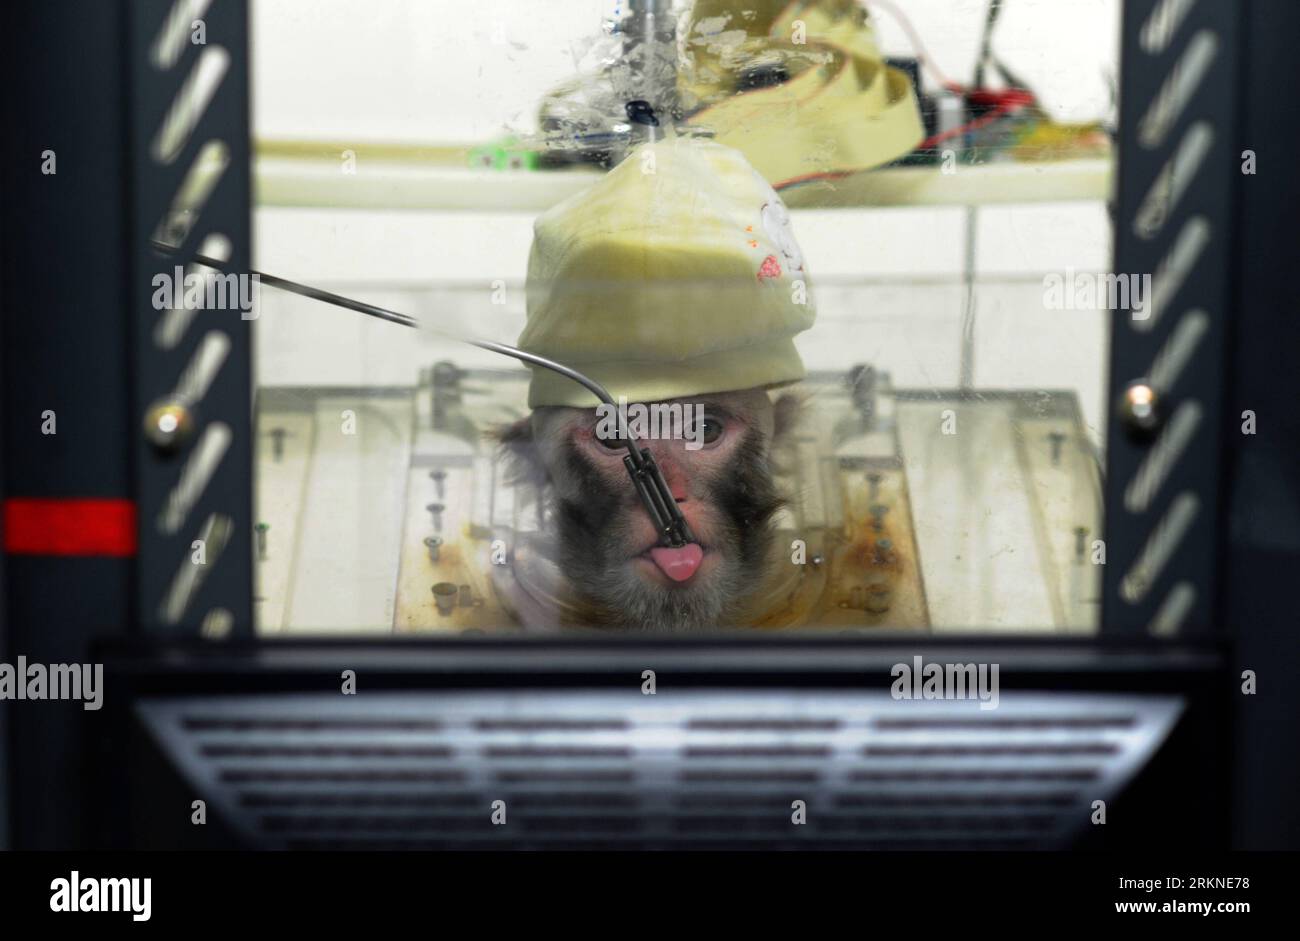 120223 -- HANGZHOU, 23 febbraio 2012 Xinhua -- Una scimmia di nome Jianhui spinge un braccio meccanico tramite segnali cerebrali in modo da ottenere bevande in un laboratorio a Hangzhou, capitale della provincia dello Zhejiang della Cina orientale, 23 febbraio 2012. Un piccolo sensore impiantato nel cervello di Jianhui consente all'animale di usare la sua mente per sollecitare un braccio meccanico a raggiungere e prendere cibo e bevande, gli scienziati dell'Università Zhejiang della Cina orientale hanno annunciato lunedì pomeriggio. La tecnologia, Brain-Machine Interface BMI, è una vera benedizione per le persone con condizioni paralizzanti, secondo Zheng Xiaoxiang, il professore a capo della ricerca Foto Stock